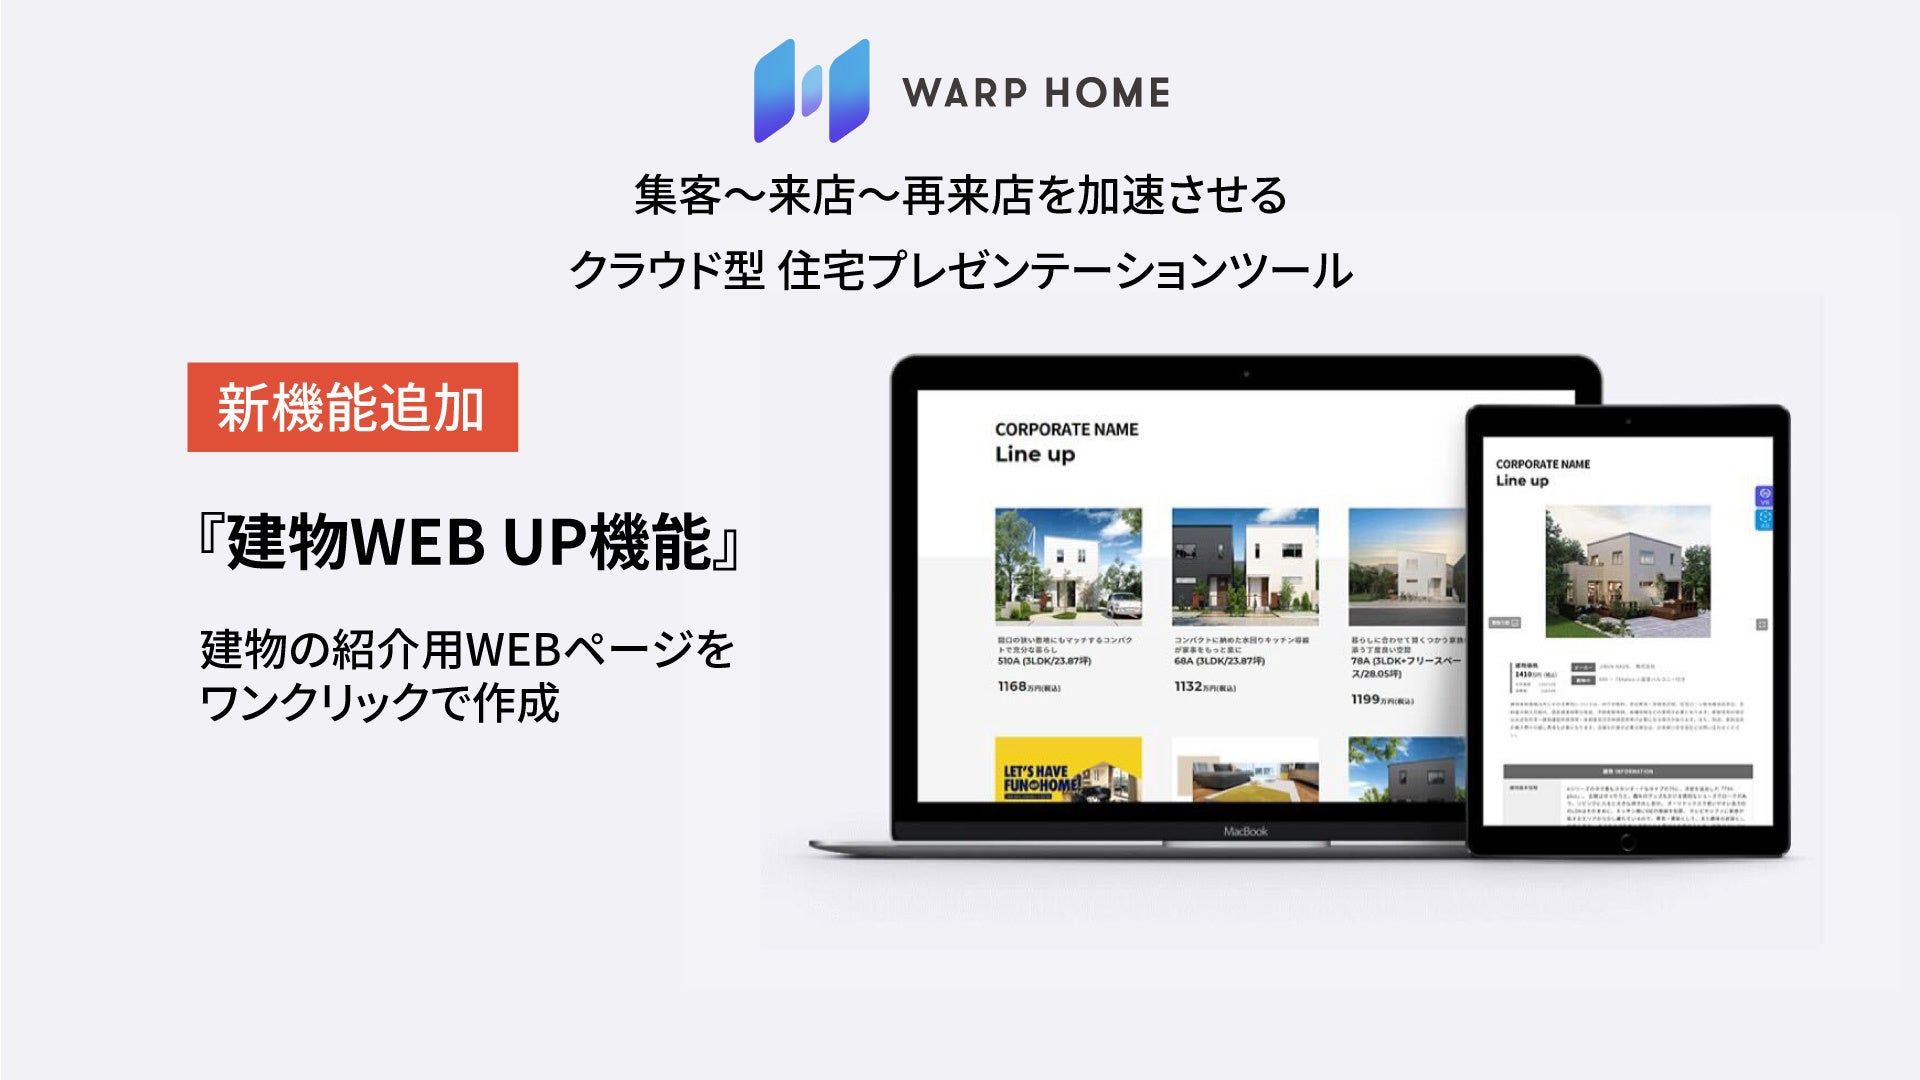 工務店・住宅メーカーのクラウド型住宅プレゼンテーションツール「WARPHOME」がアップデート。『建物WEB UP』機能が追加され、顧客が店舗に行かずに、自宅で家づくりが可能にのサブ画像1